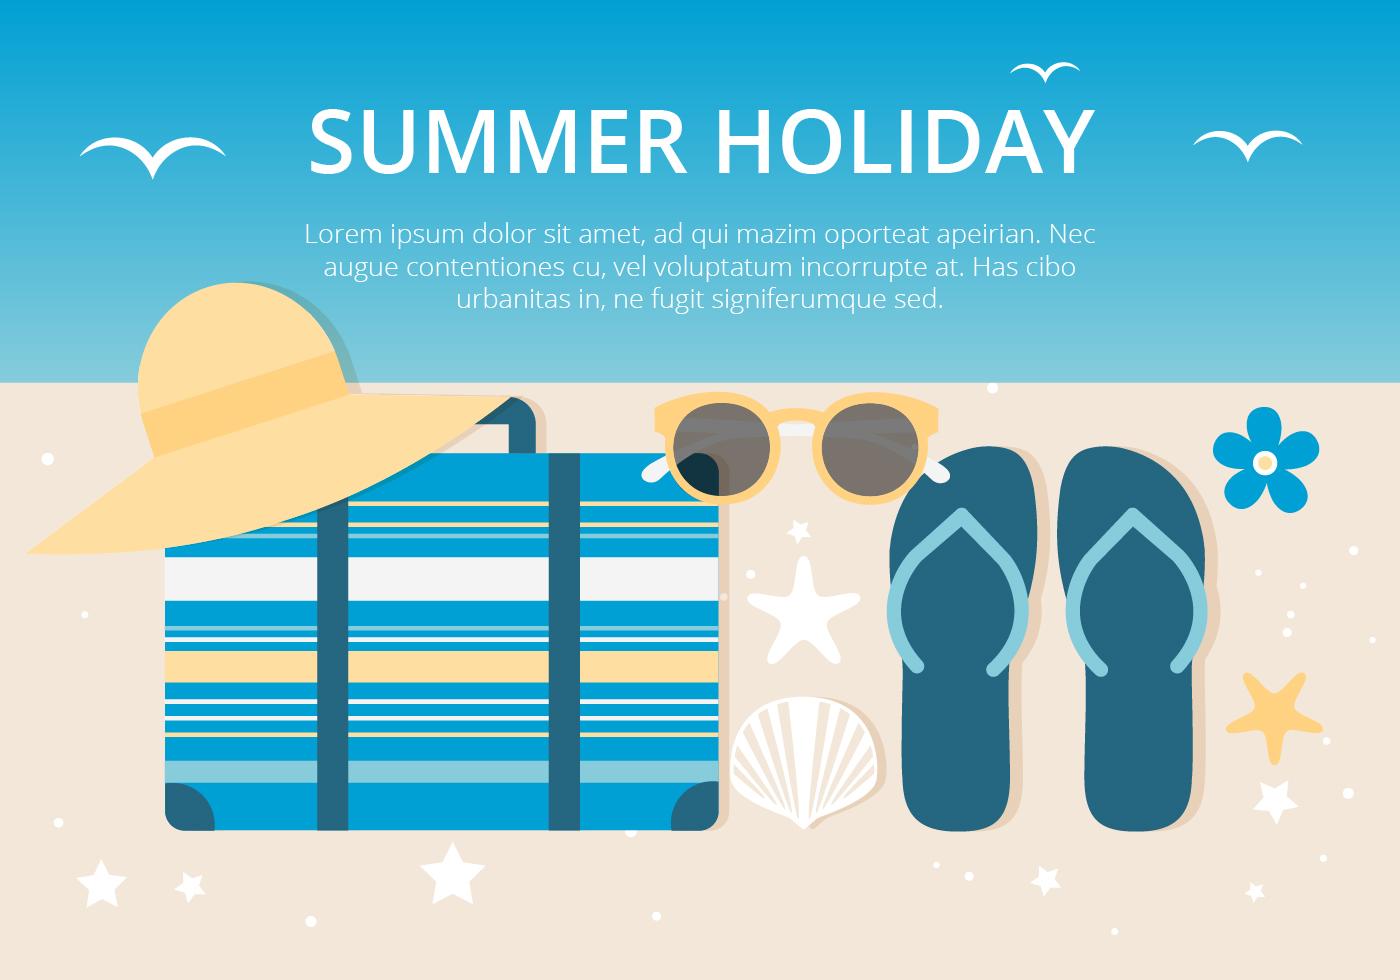 暑假时间背景插图 暑假 拖鞋 太阳镜 海星 行李箱 帽子 贝壳 手绘插图 北极熊素材库